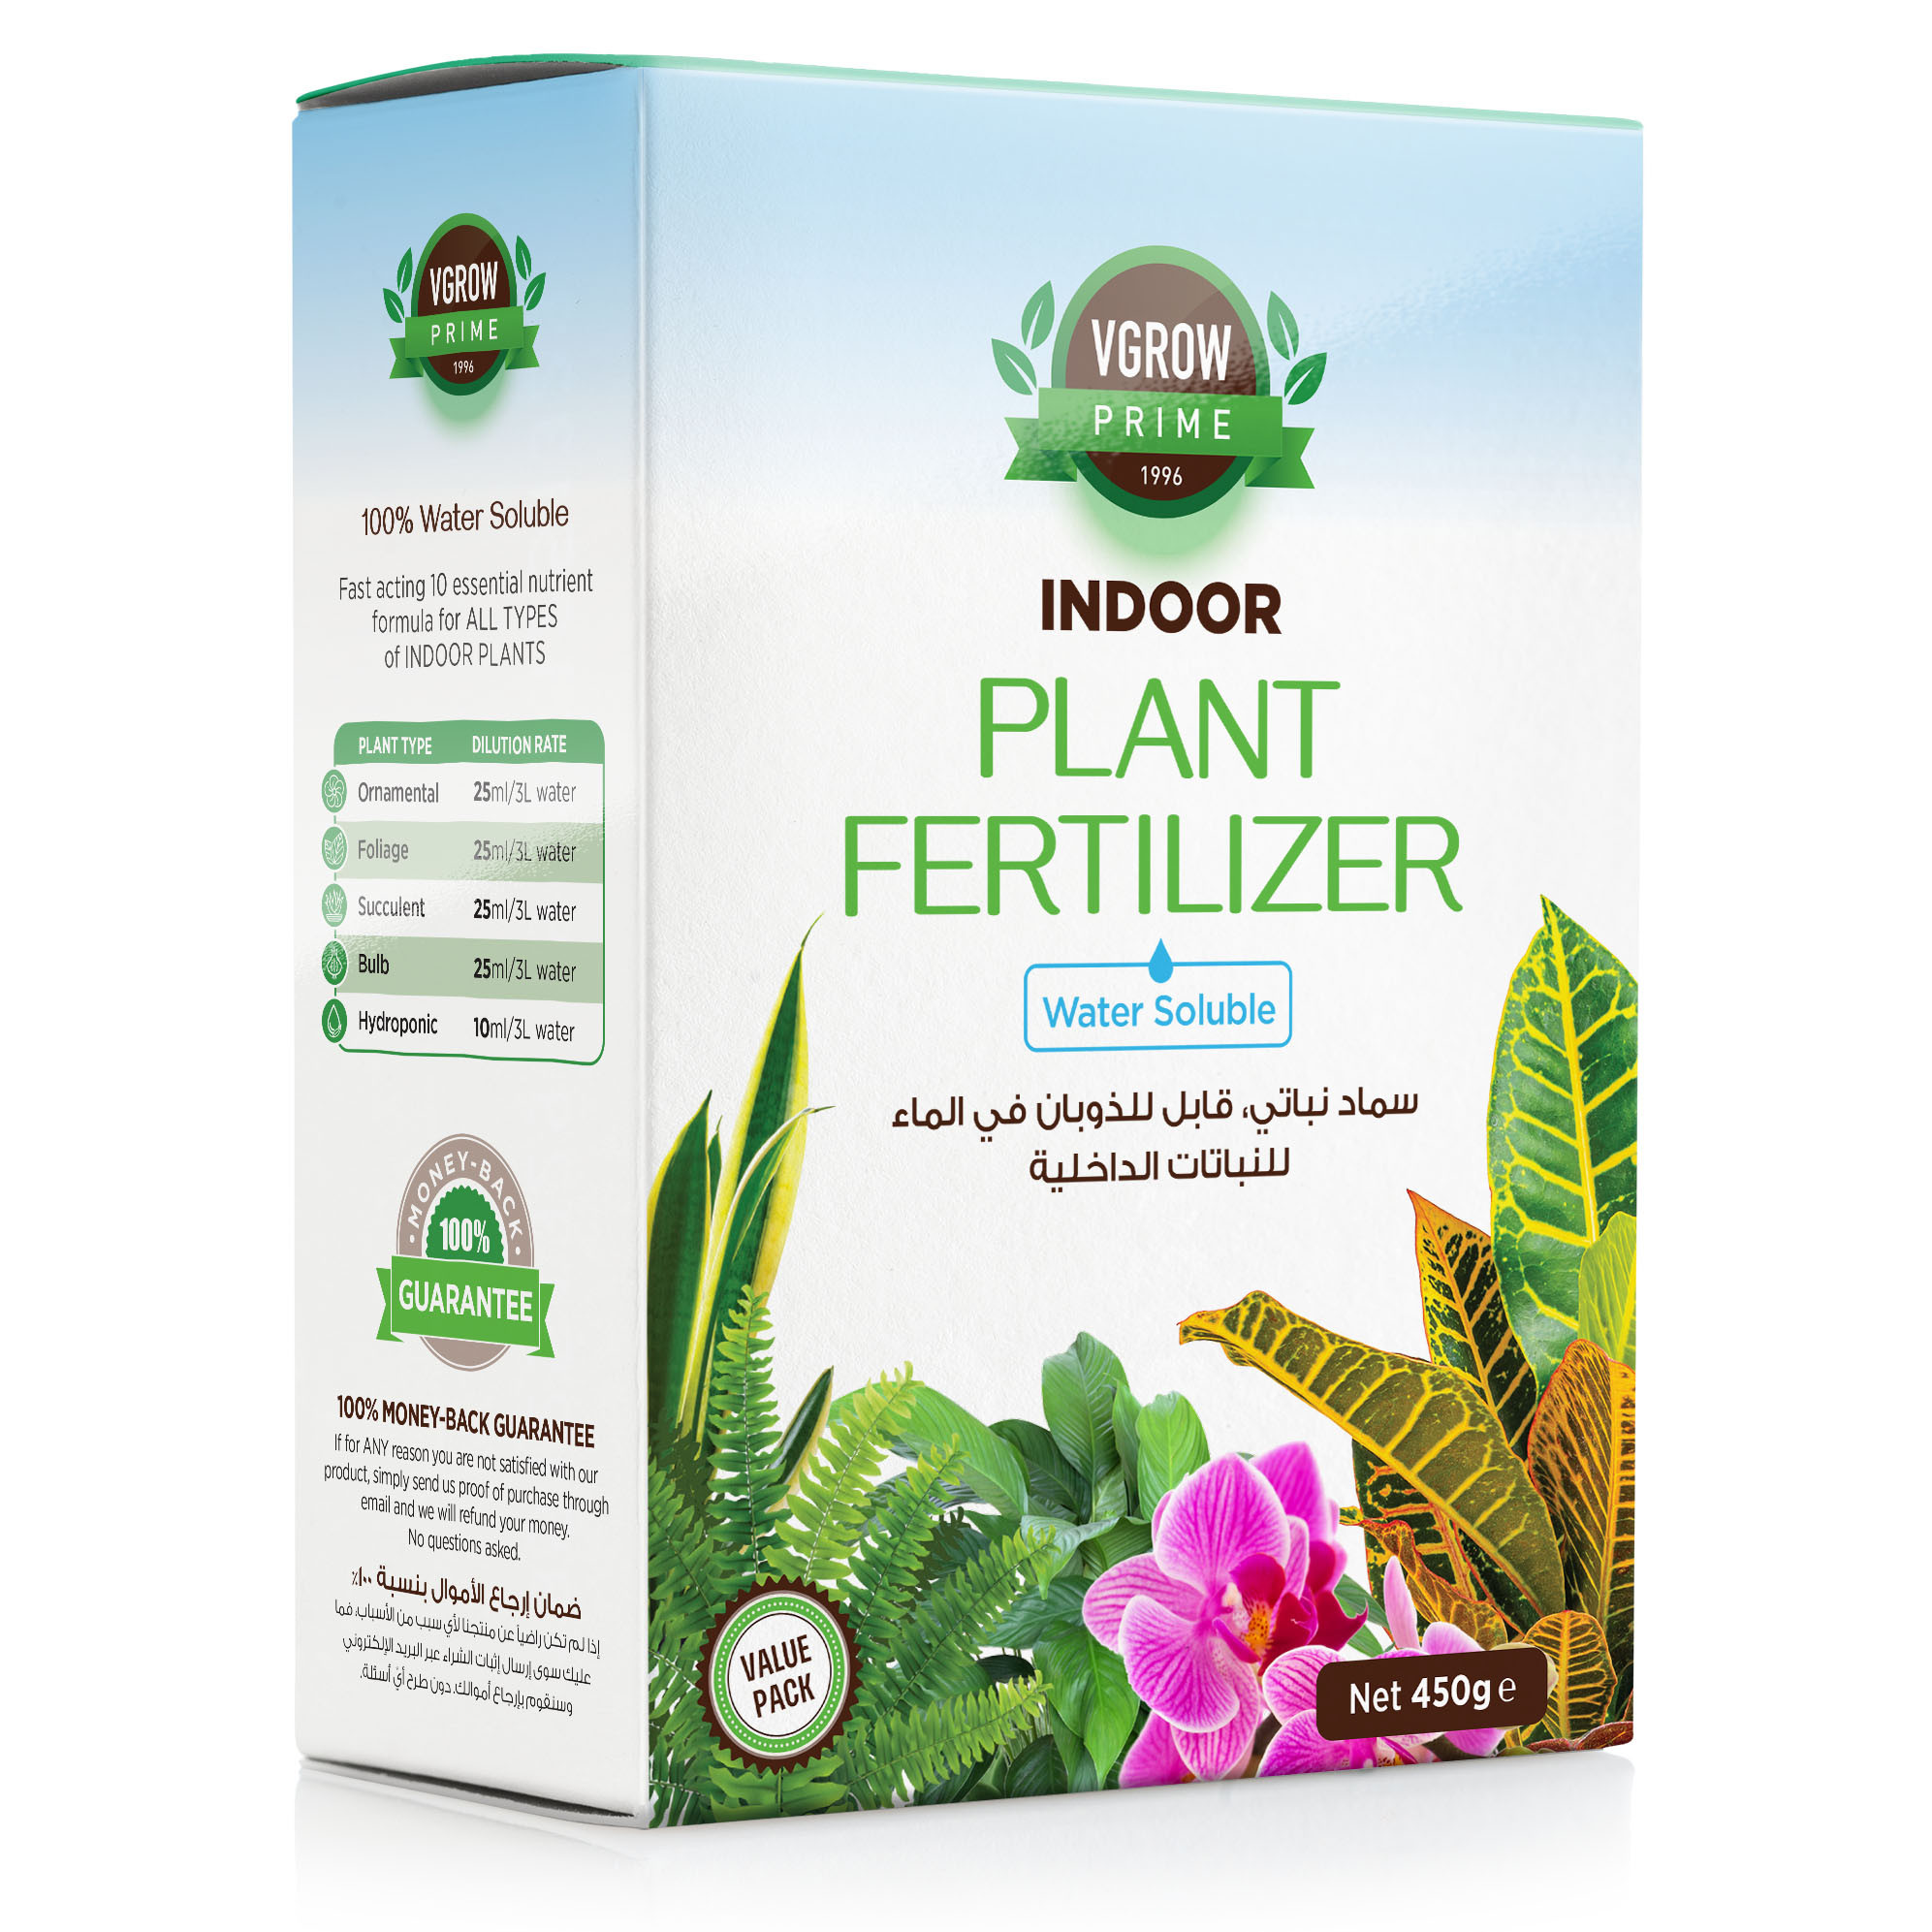 Vgrow Indoor  Fertilizer - 100% Water Soluble Essential ents For Indoor s - 450g